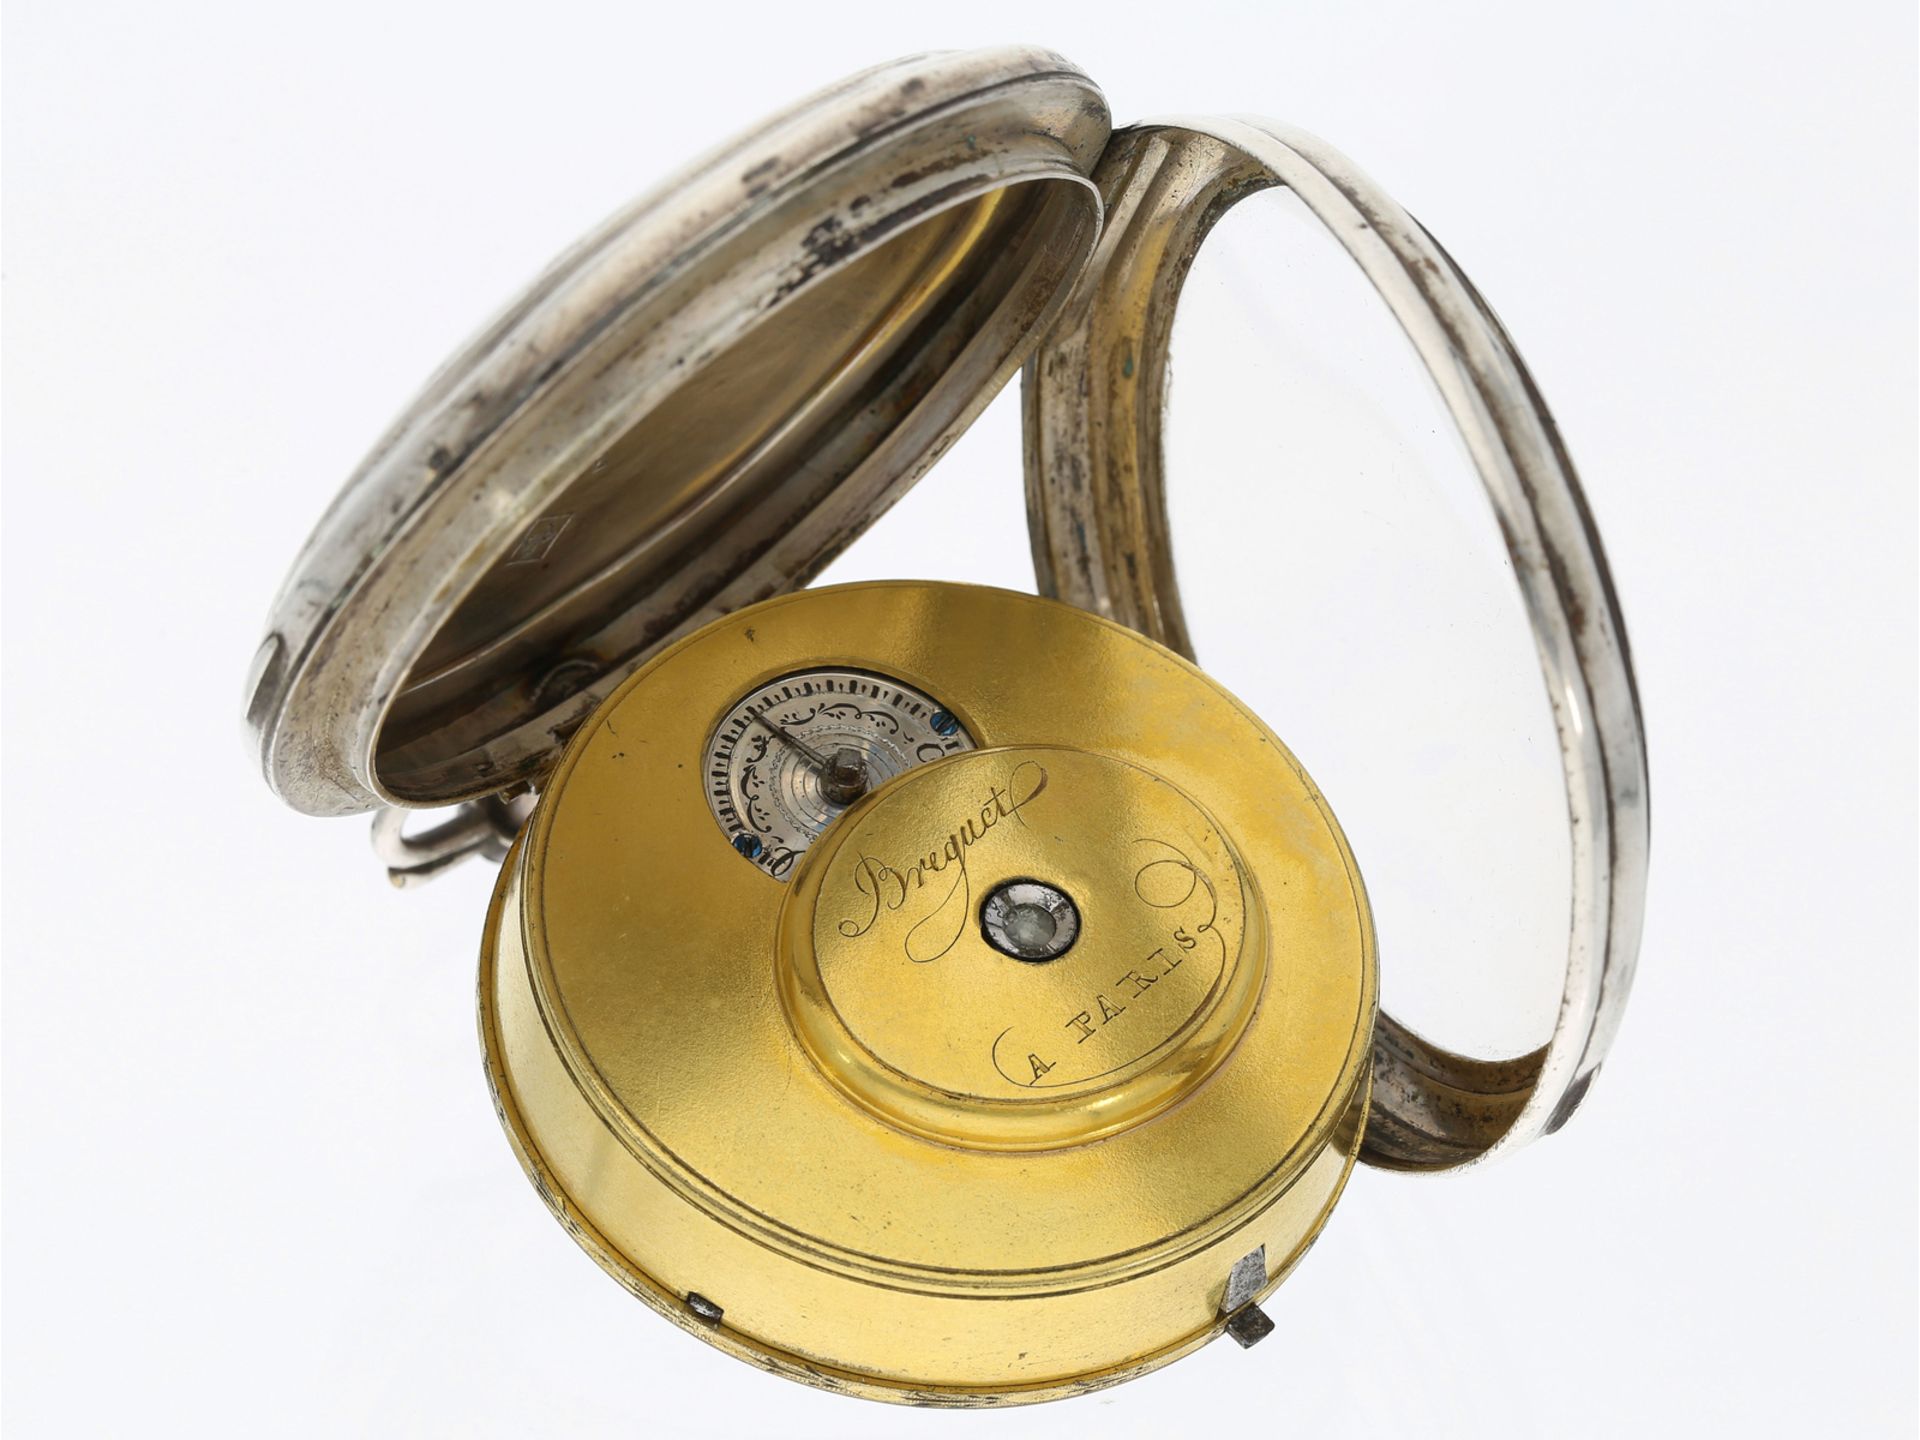 Taschenuhr: silberne Spindeluhr mit Datum, signiert Breguet a Paris - Bild 3 aus 4